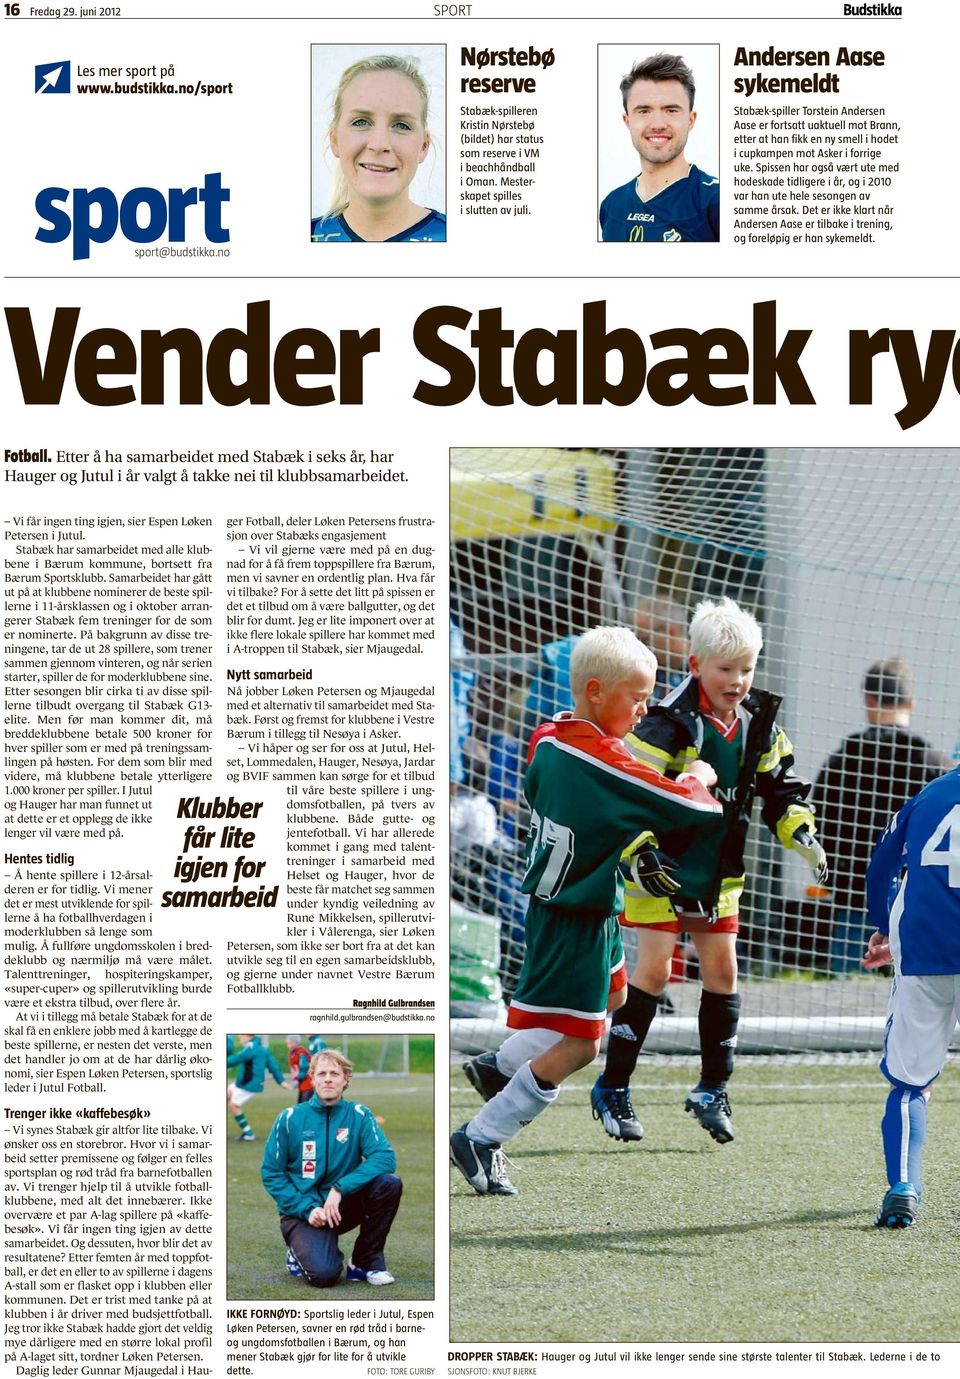 Andersen Aase sykemeldt Stabæk-spiller Torstein Andersen Aase er fortsatt uaktuell mot Brann, etter at han fikk en ny smell i hodet i cupkampen mot Asker i forrige uke.